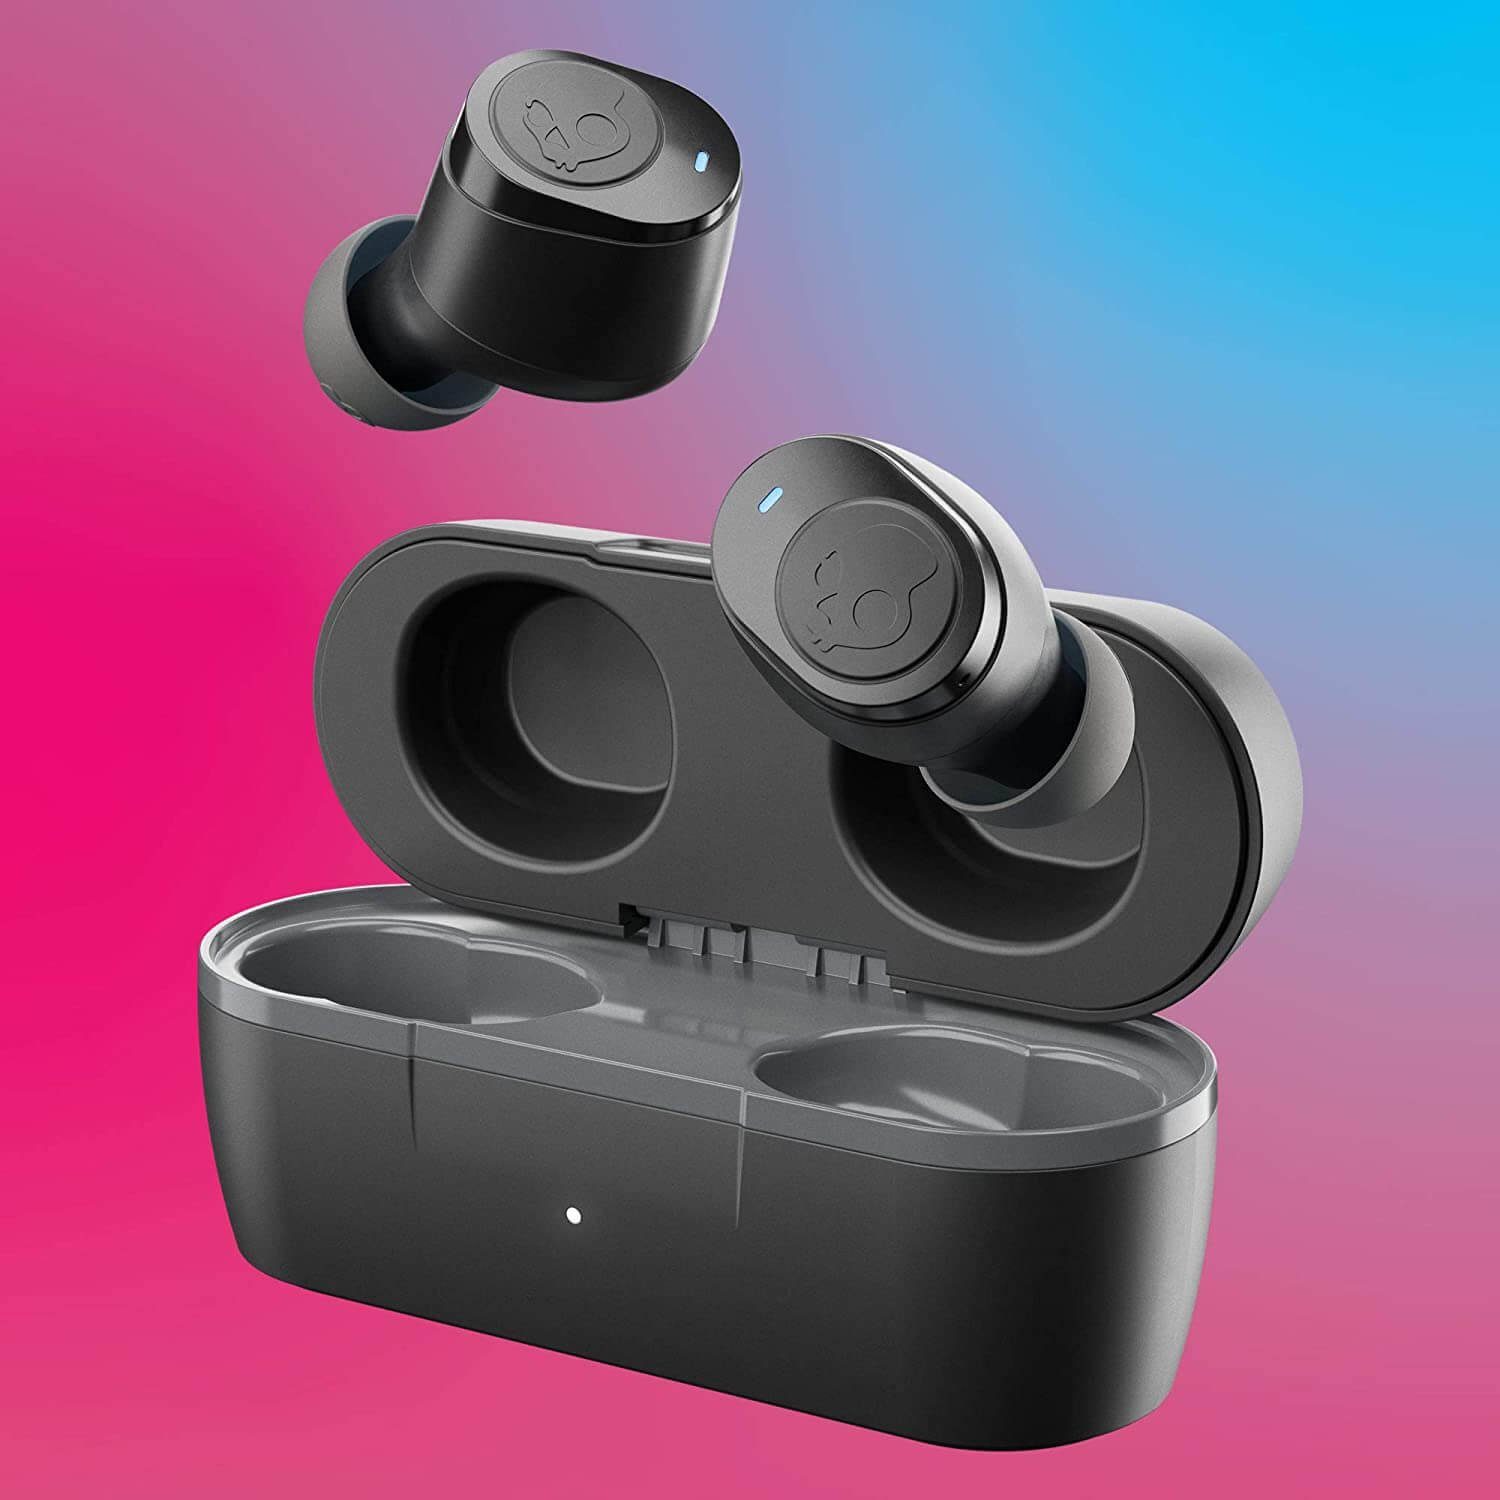 IPX4 (Bluetooth, jeder 5.0 Wasserresistenz) Kopfhörer Einzelverwendung In-Ear-Kopfhörer Bluetooth In-Ear wireless Seite Skullcandy Jib möglich,